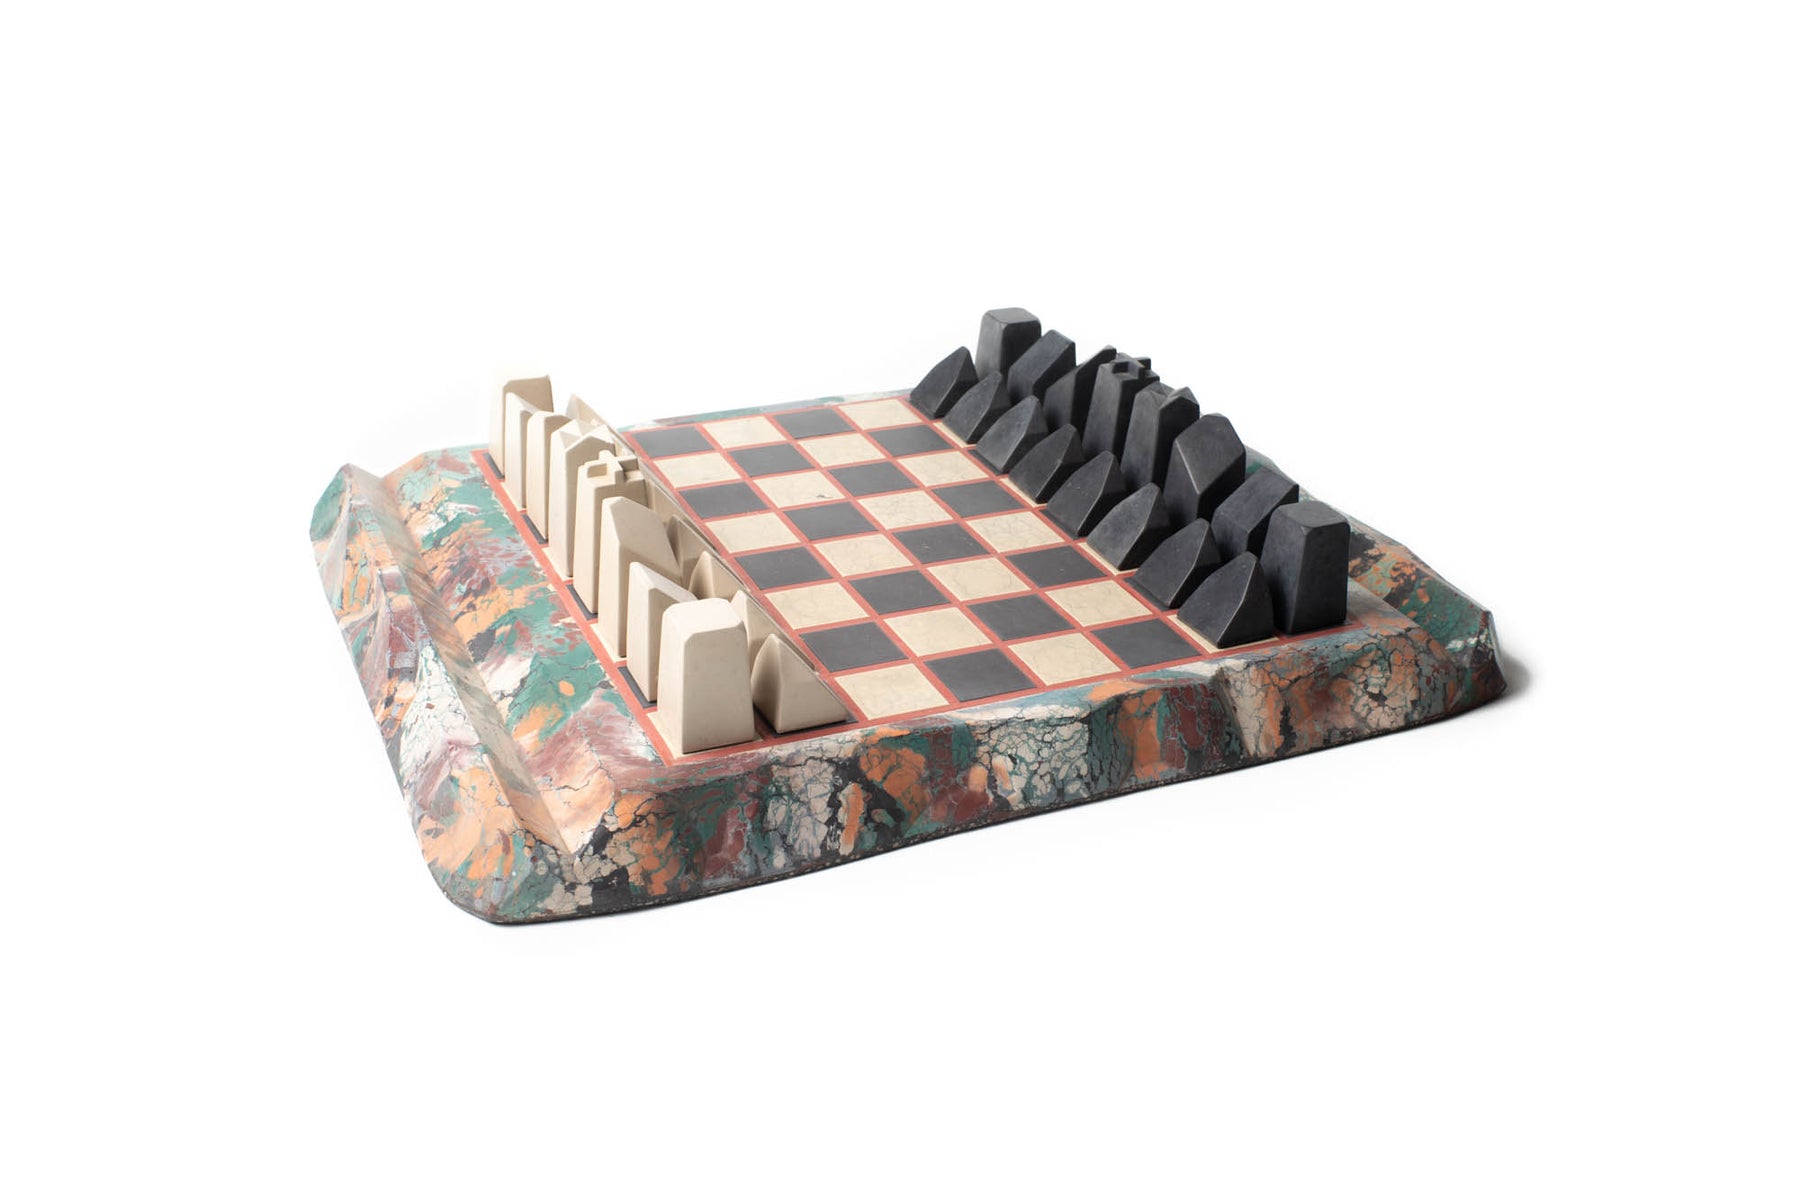 hermes chess set